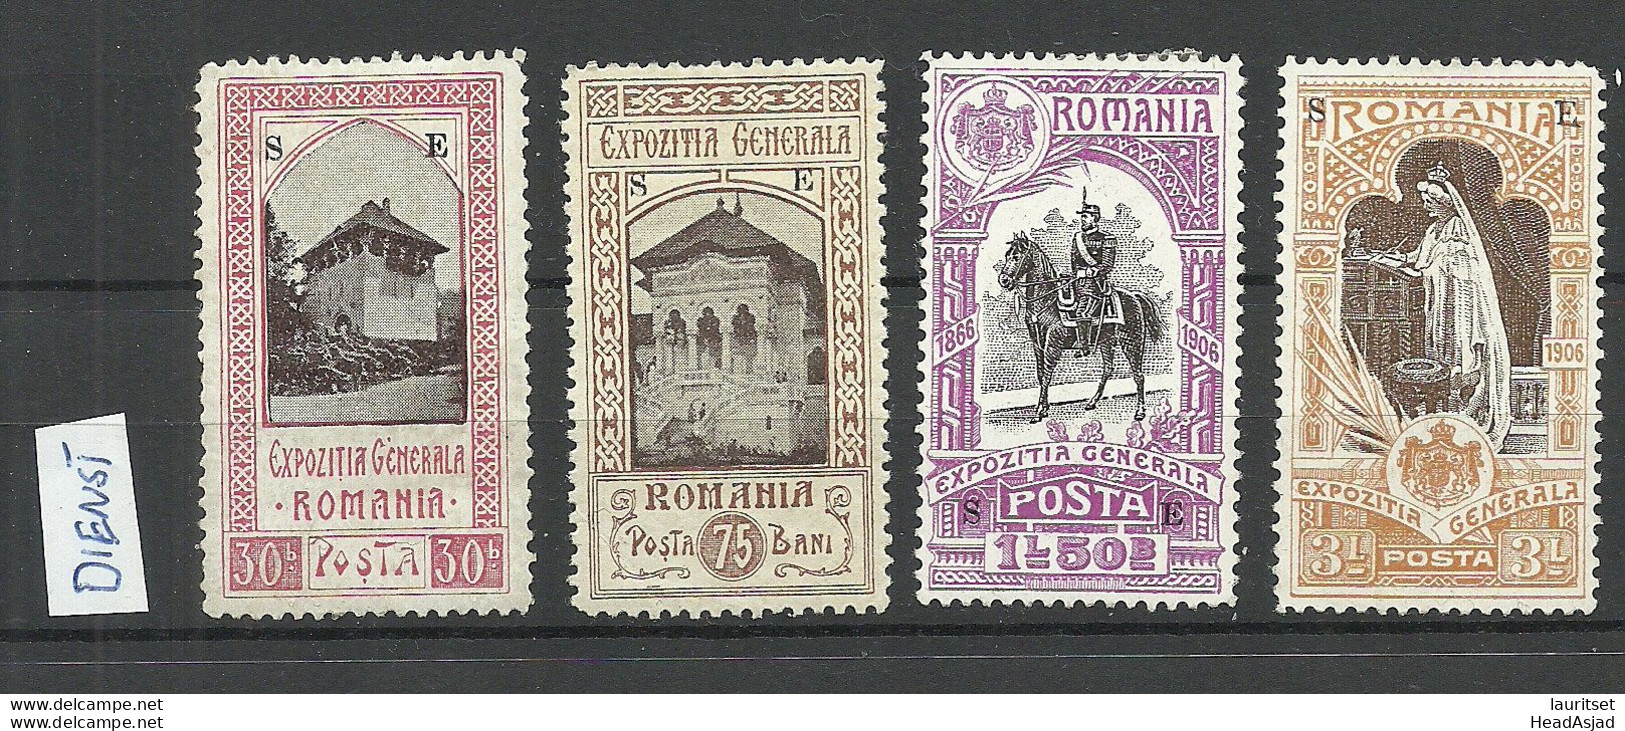 ROMANIA Rumänien 1906 - 4 Dienstmarke EXPOZITIA GENERALA With OPT "SE" * - Dienstmarken